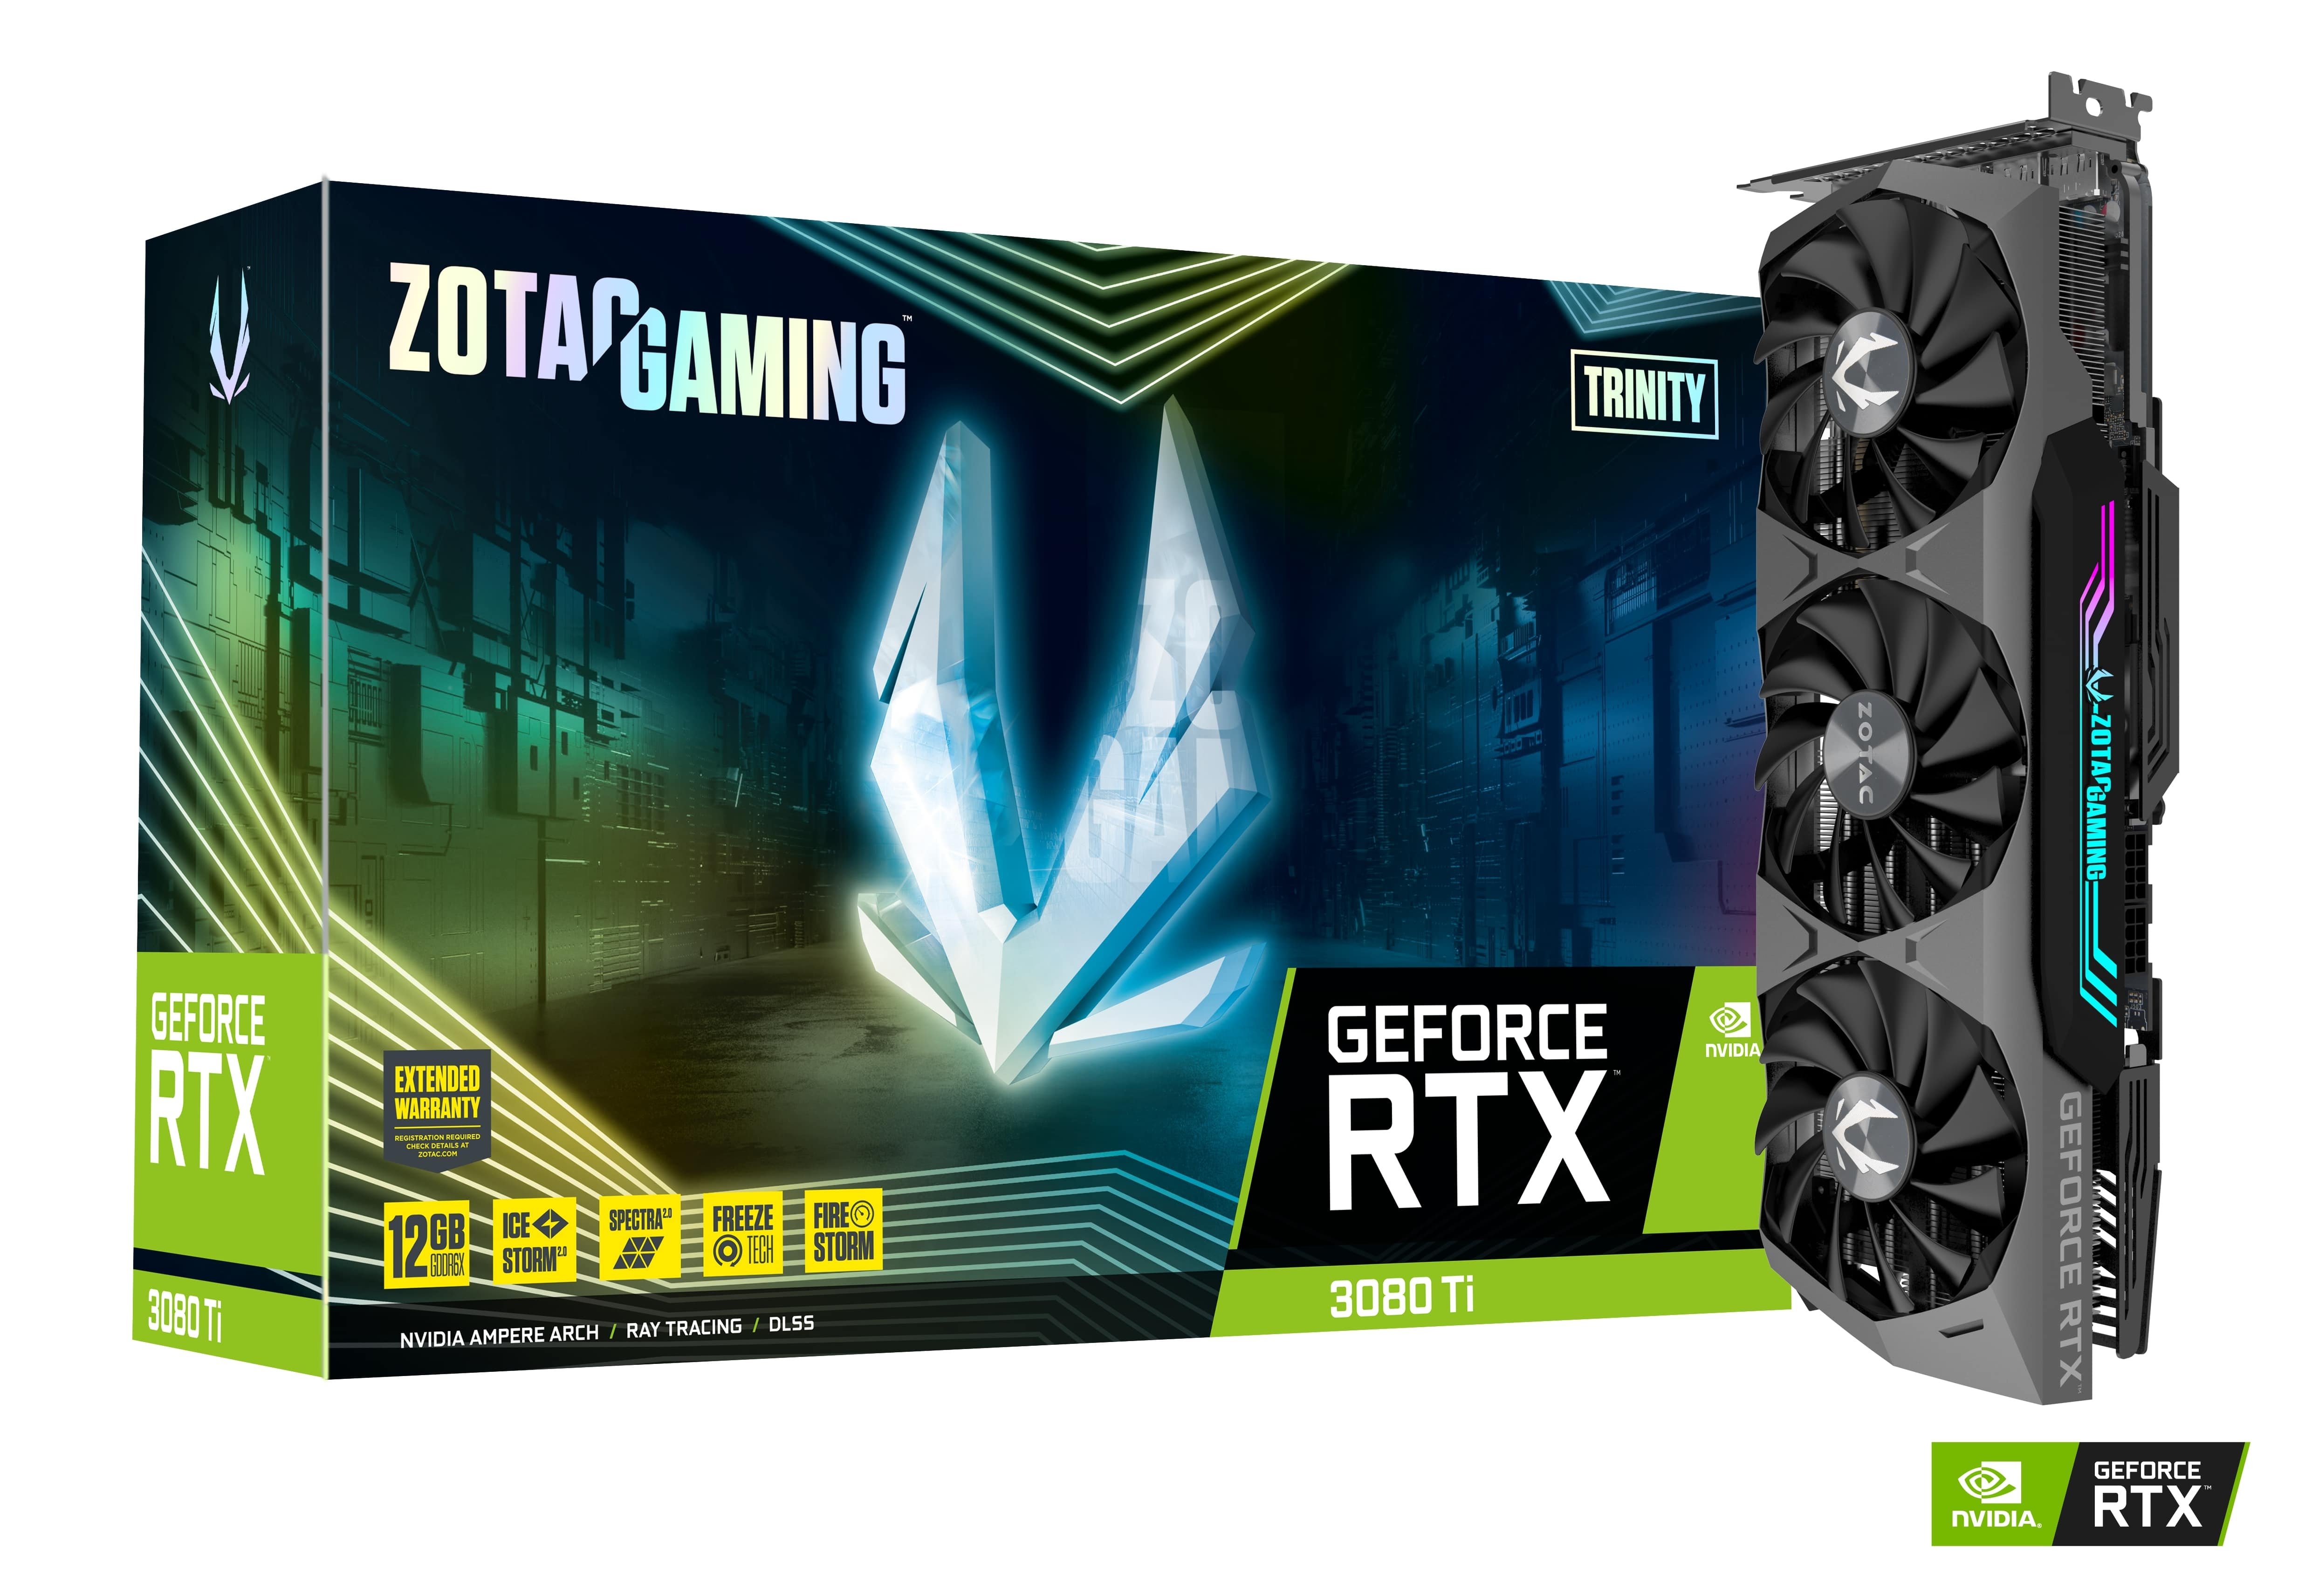 ZOTAC GAMING GeForce RTX 3080 Ti Trinity | ZOTAC